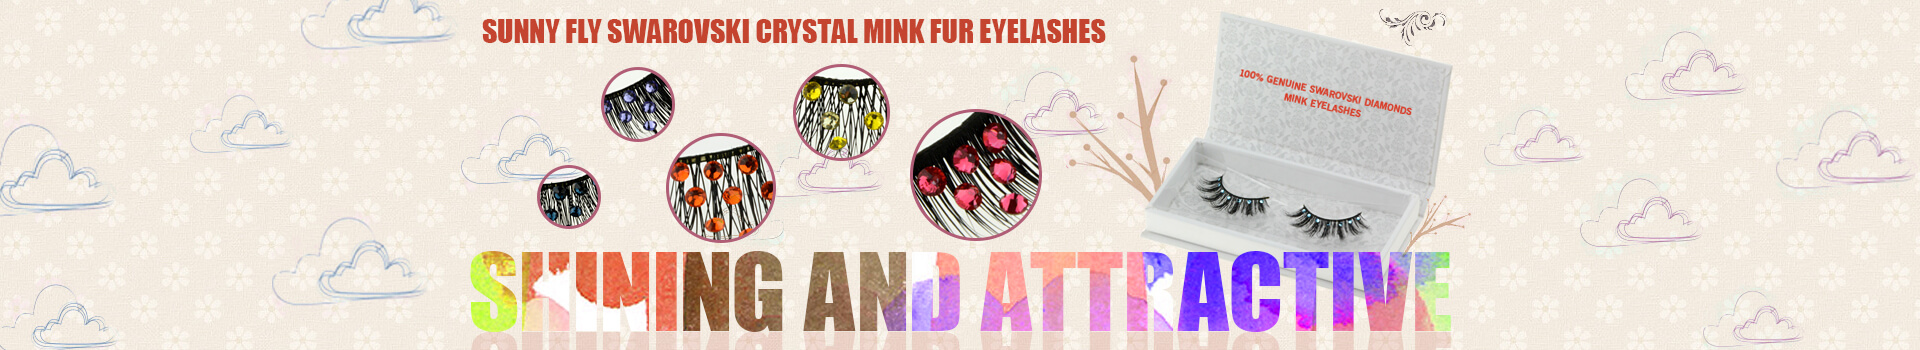 Swarovski Crystal Mink Fur Eyelashes MS08